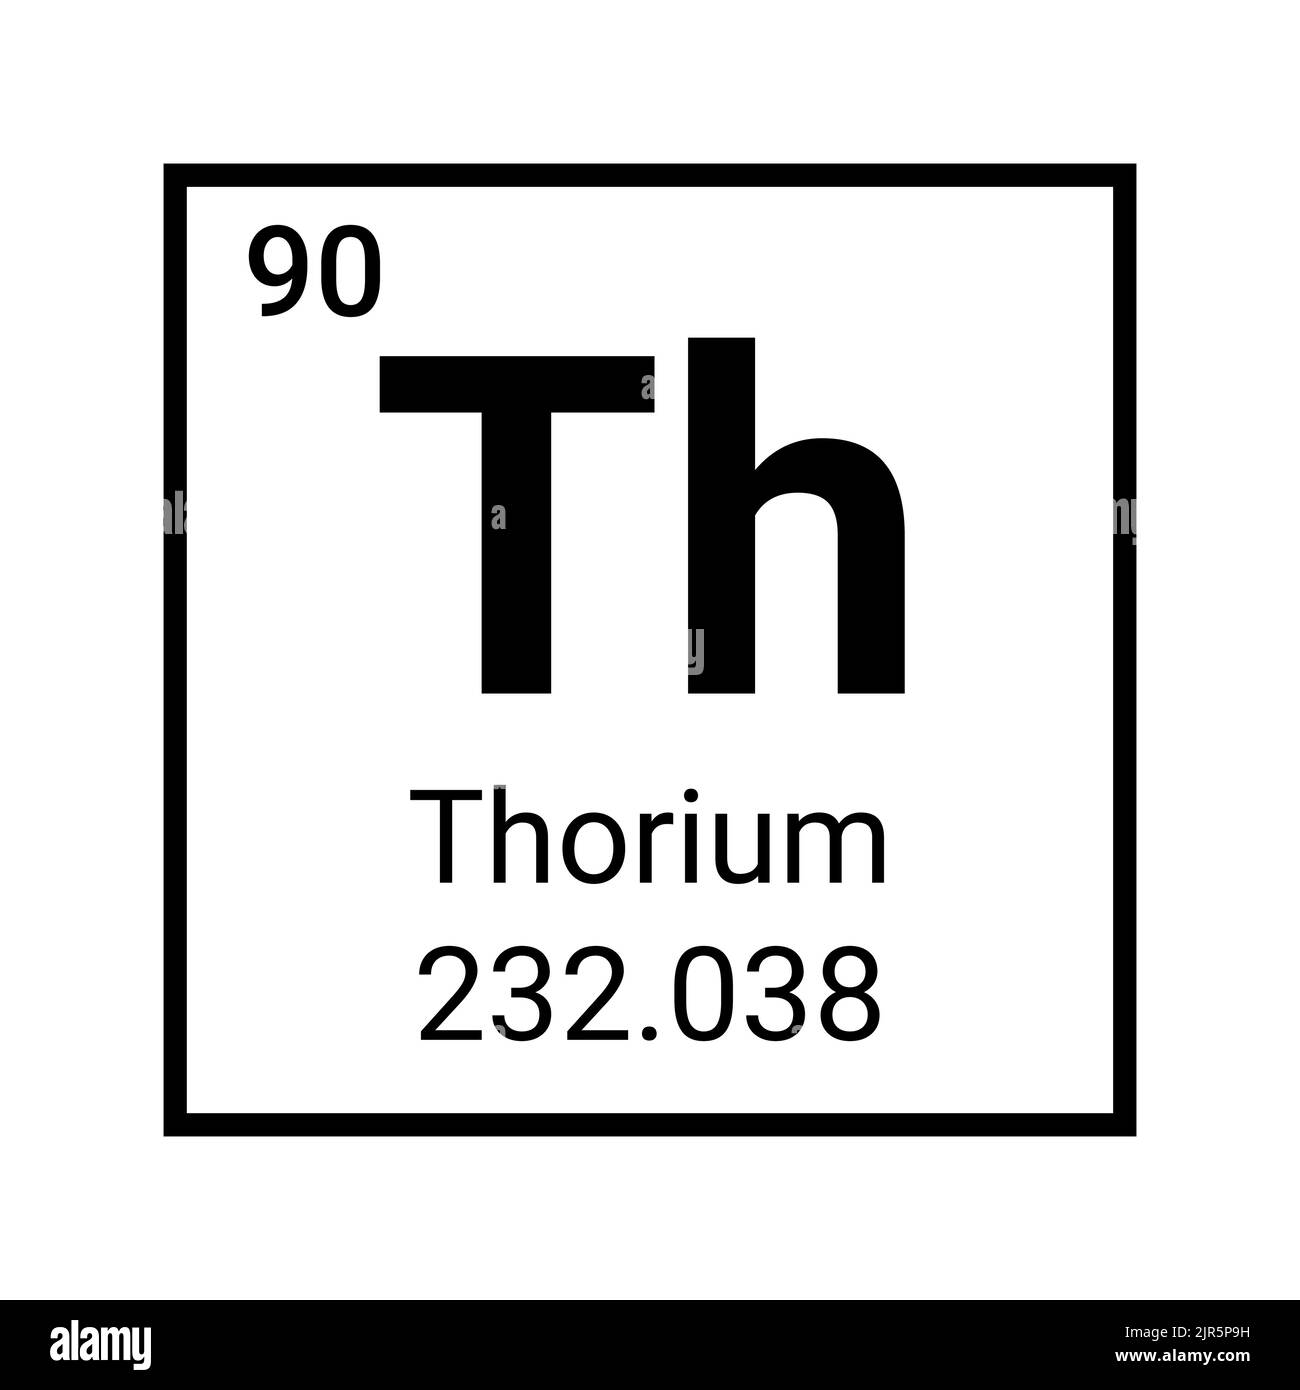 thorium element facts